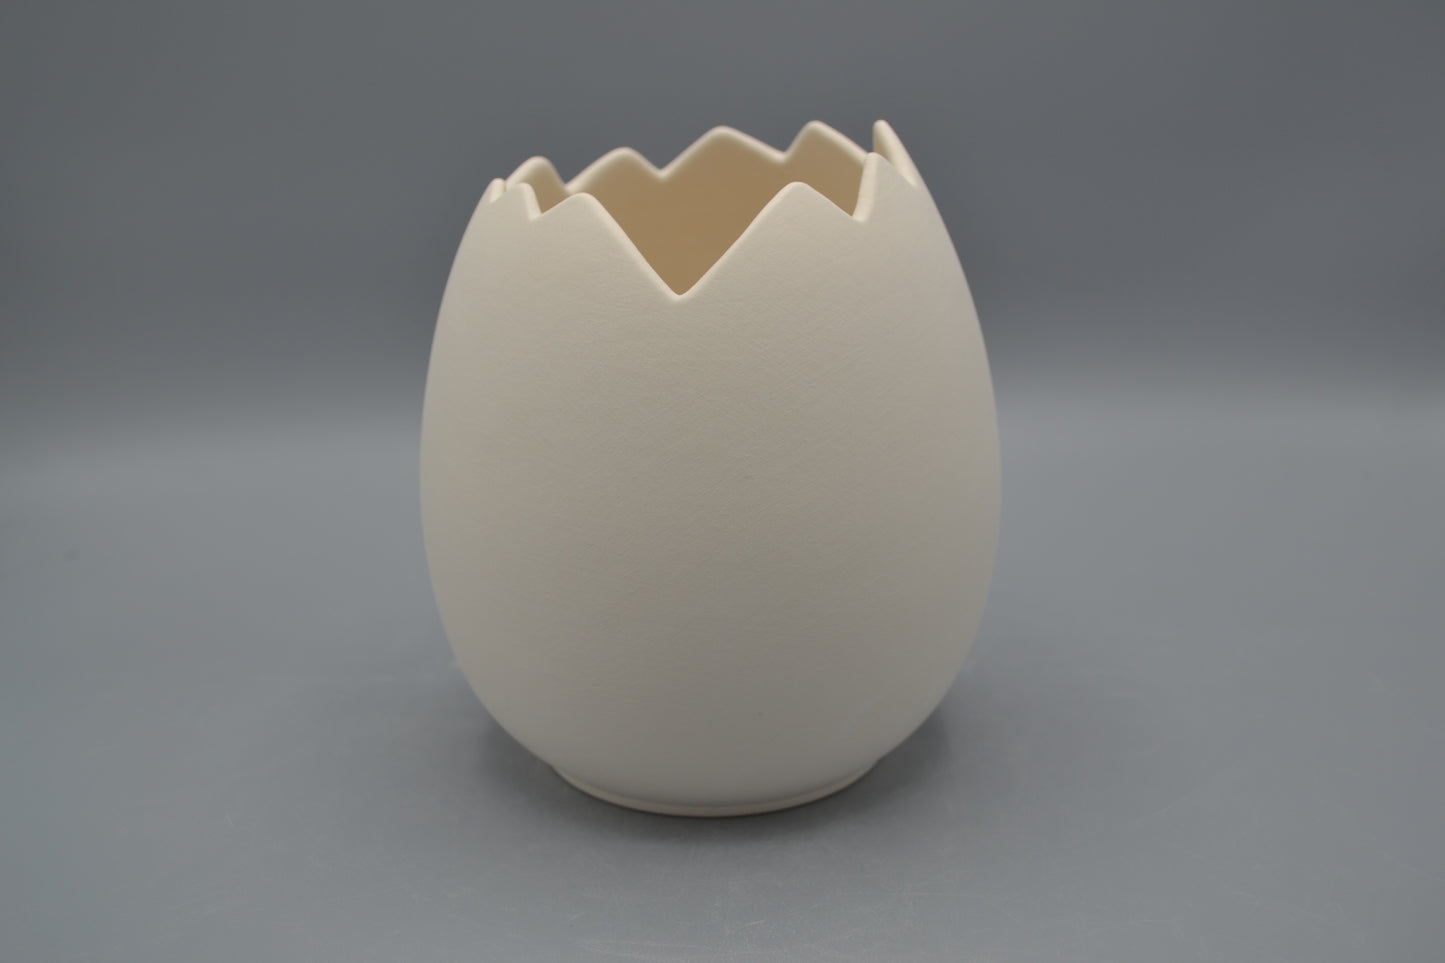 Uovo aperto di in ceramica semilavorata GREZZA da dipingere